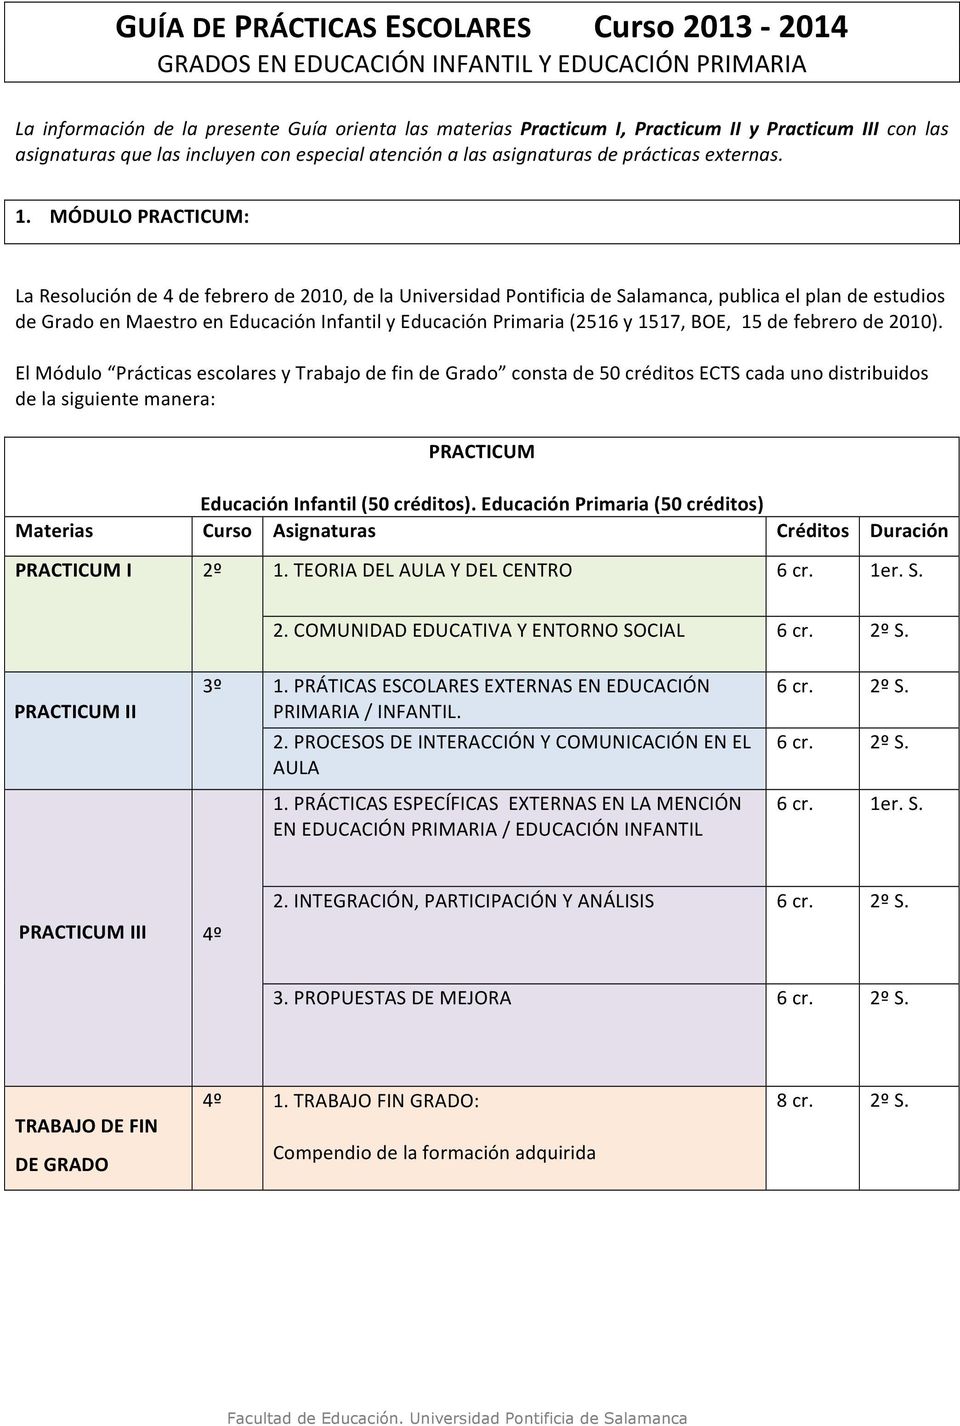 MÓDULO PRACTICUM: La Resolución de 4 de febrero de 2010, de la Universidad Pontificia de Salamanca, publica el plan de estudios de Grado en Maestro en Educación Infantil y Educación Primaria (2516 y